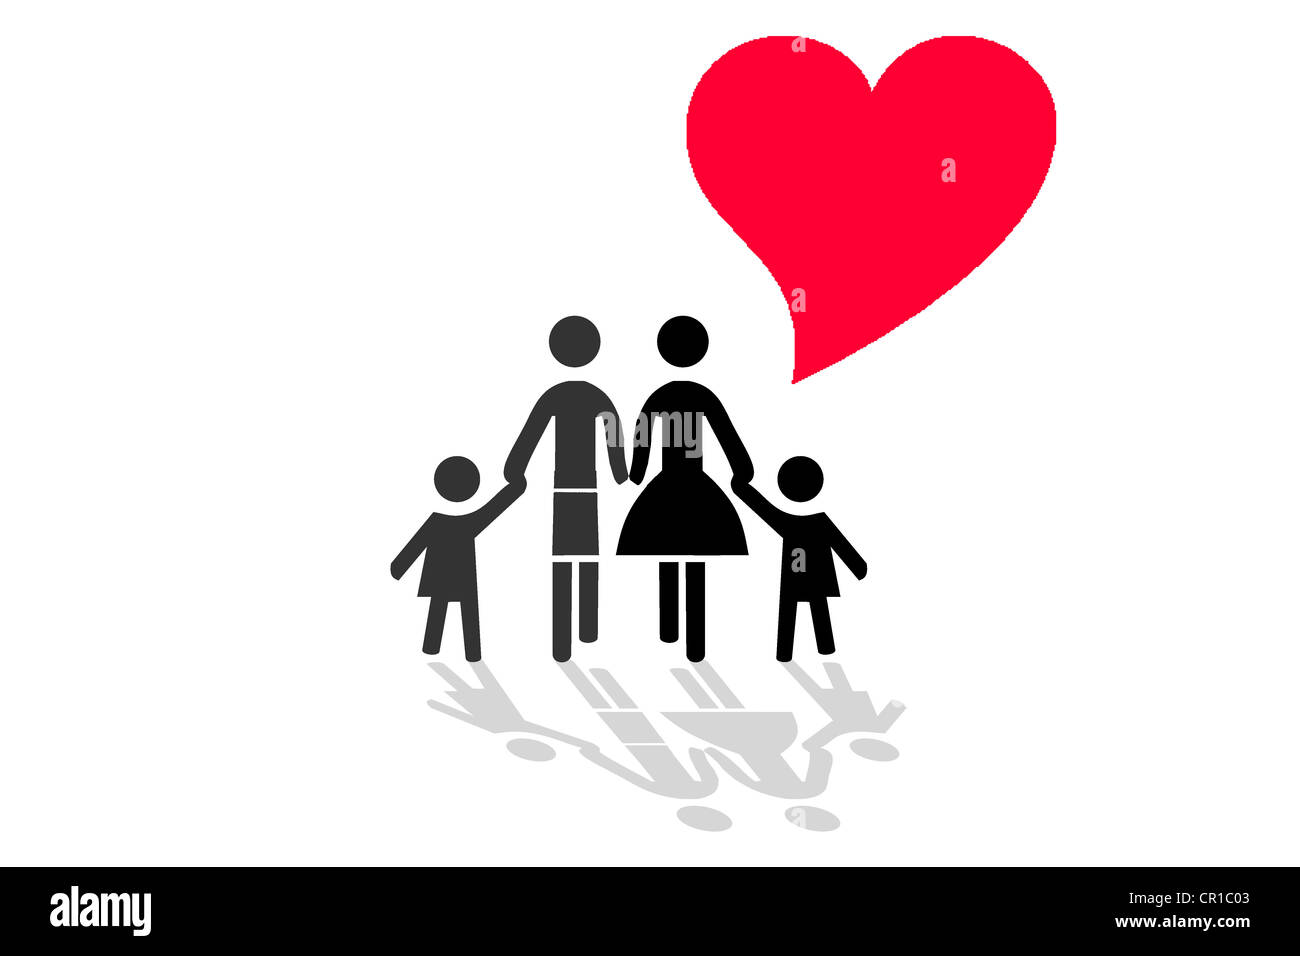 Famiglia con cuore, immagine simbolica per amore e armonia in una famiglia, illustrazione Foto Stock